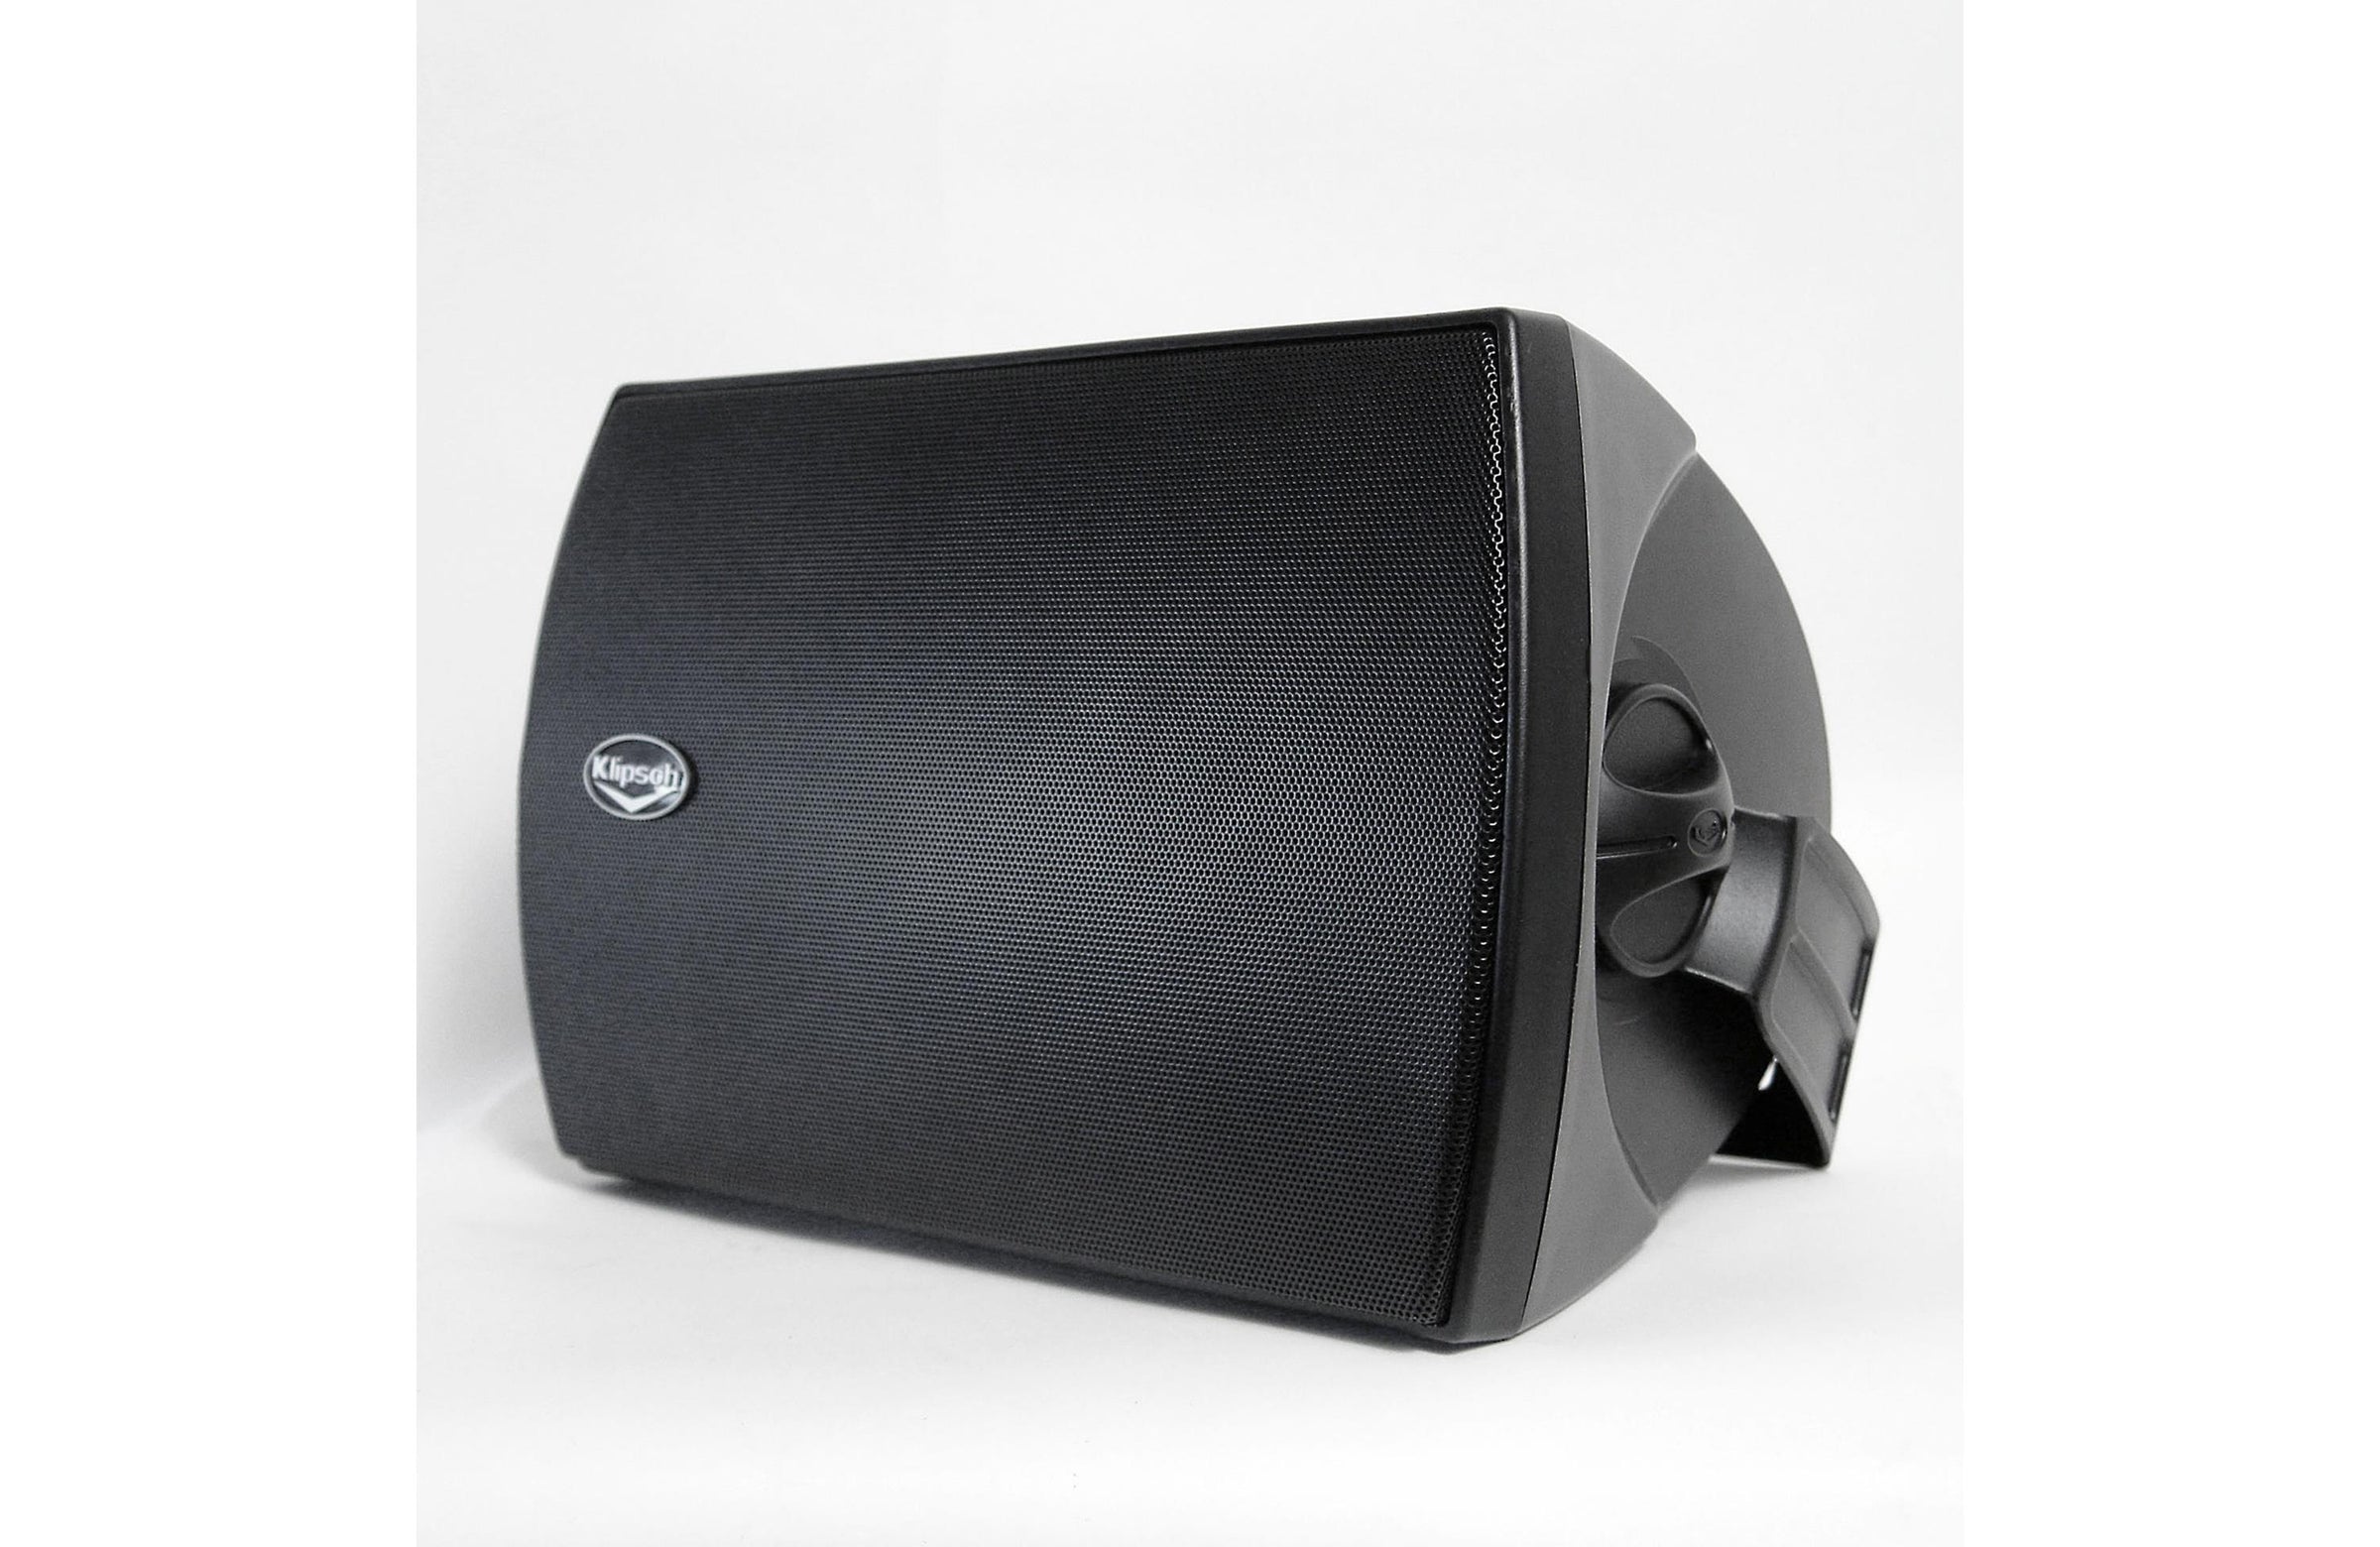 Restored Klipsch AW-525 Indoor/Outdoor Speakers All-Weather Outdoor Speaker - Black (Pair) (Refurbished) - image 1 of 5